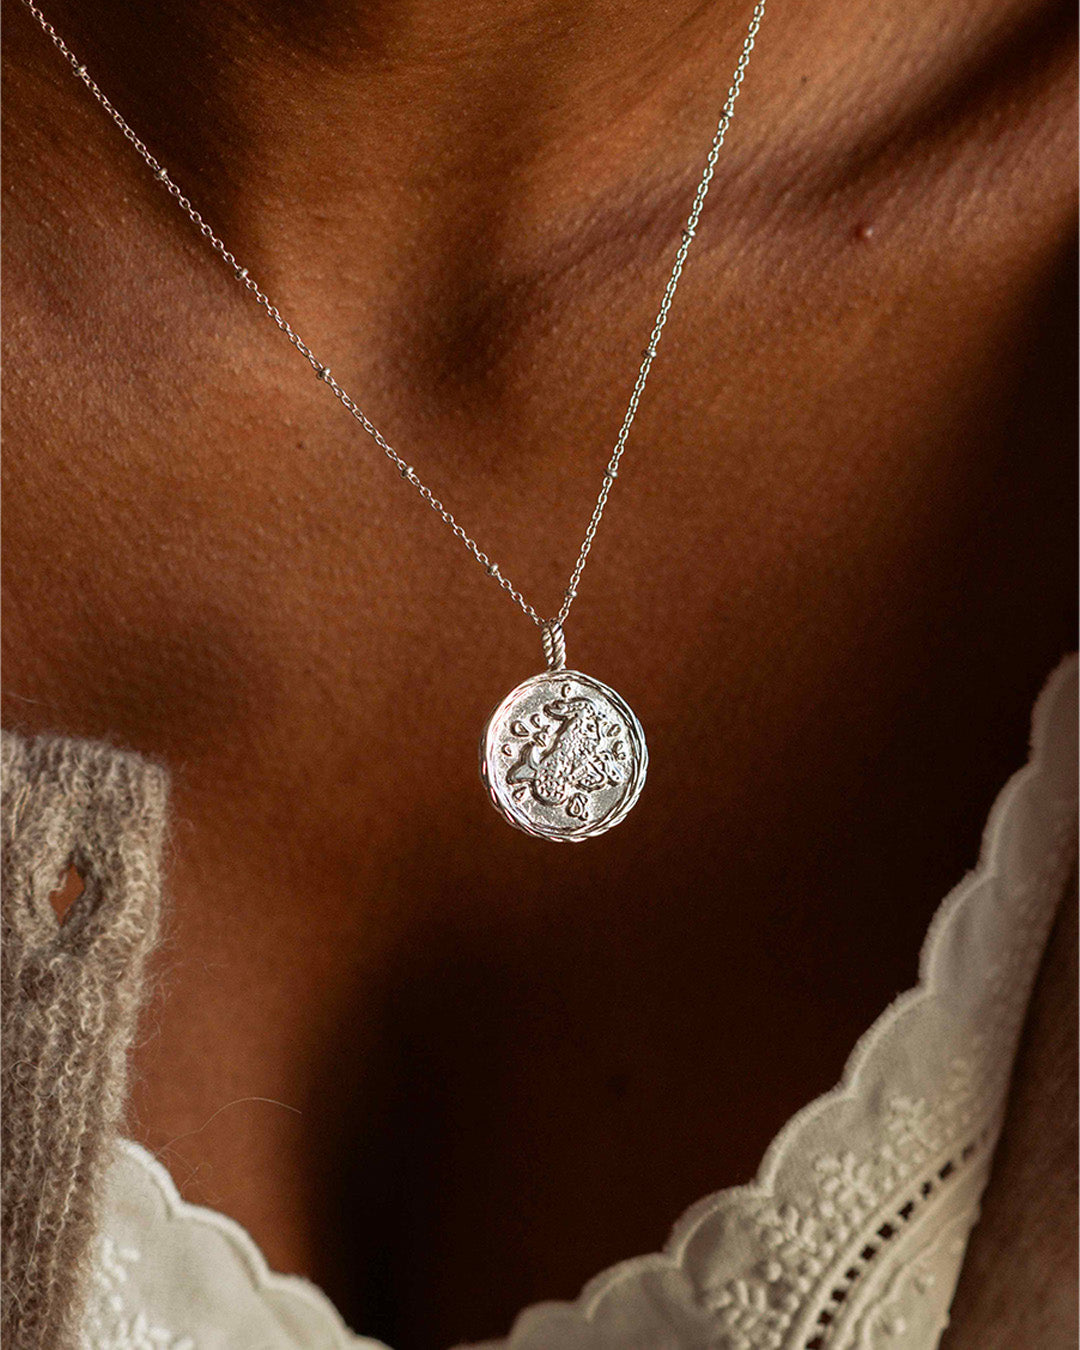 Collier en argent massif 925 composé d'une chaîne forçat avec une médaille au signe astrologique Capricorne fabriqué en France.